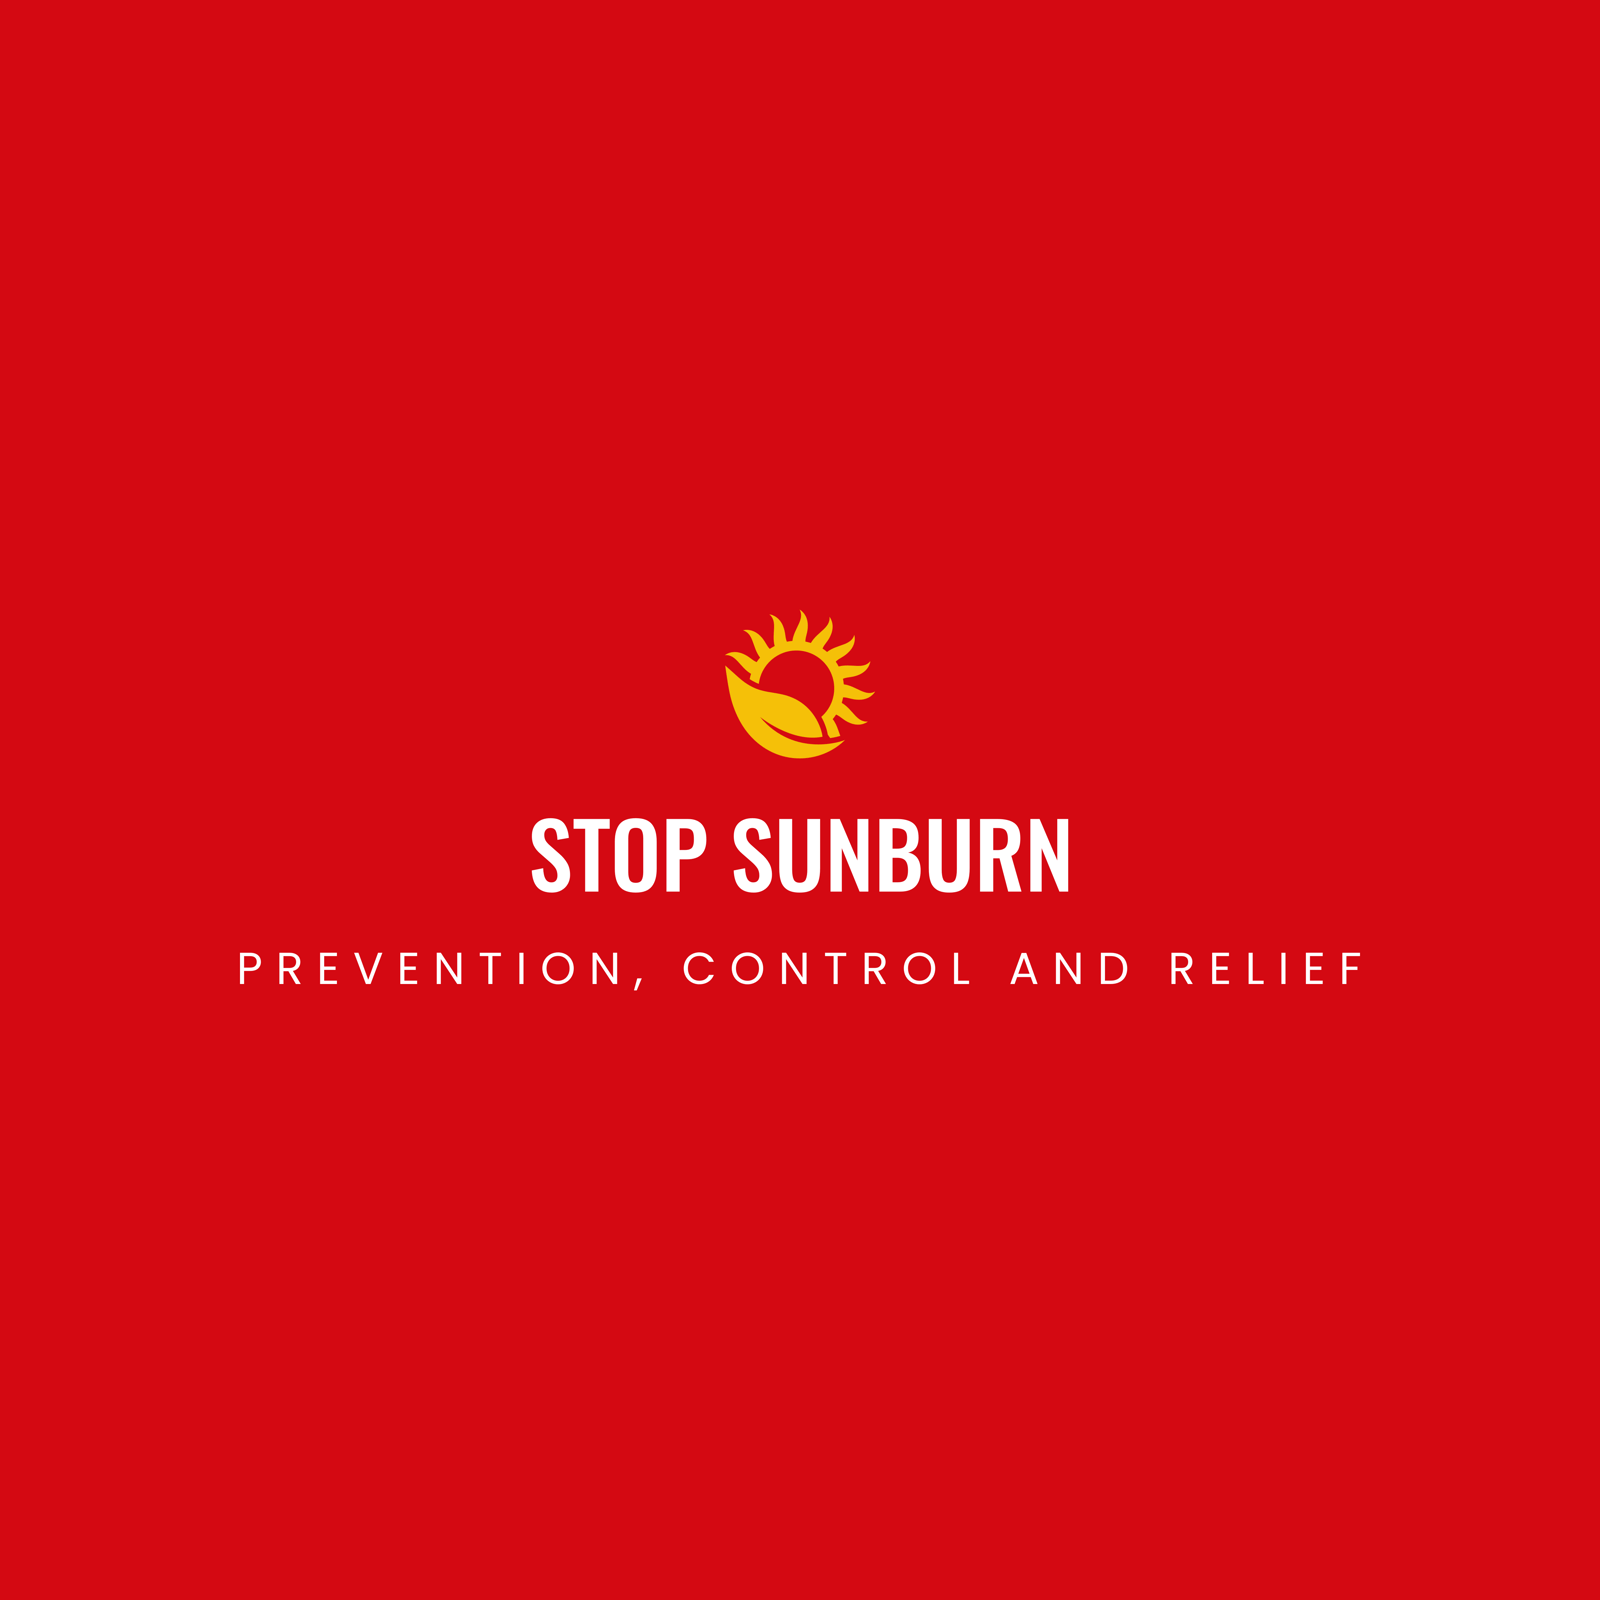 sunburn - Search Adgully.com